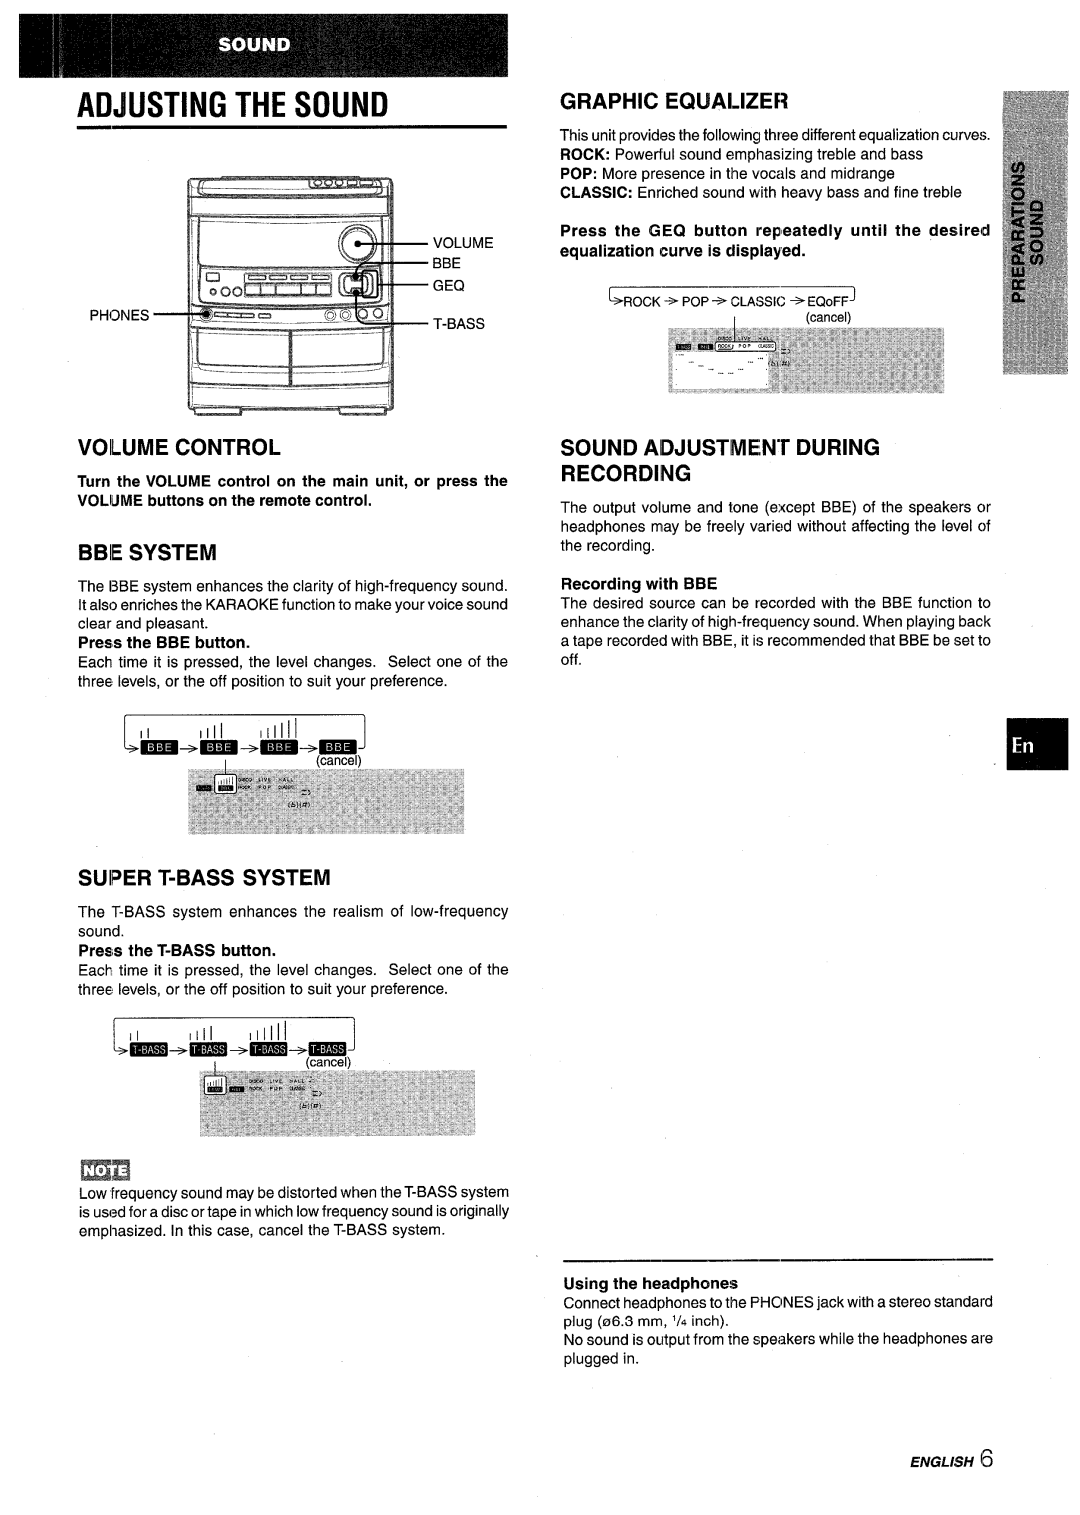 Aiwa NSX-V9000 Adjusting The Sound, Voilume Control, Bbie System, Graphic Equalizer, SOUND ADJUSTME,N”r DURING RECORDING 